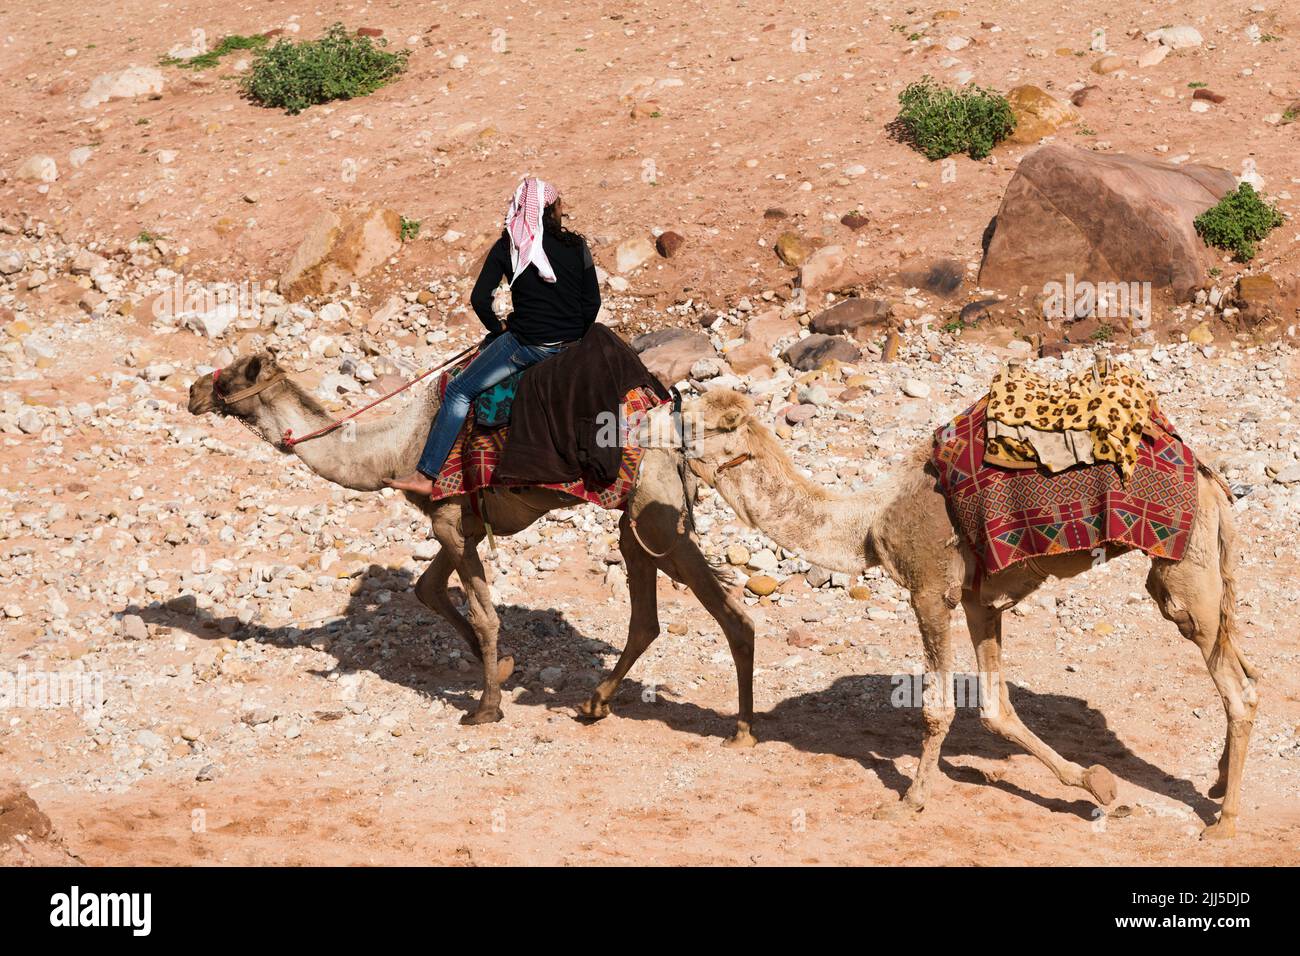 Uomo locale a cammello nell'antica città di Petra, Giordania. I cammelli servivano da trasporto esotico per i turisti che visitavano questo sito patrimonio dell'umanità dell'UNESCO Foto Stock